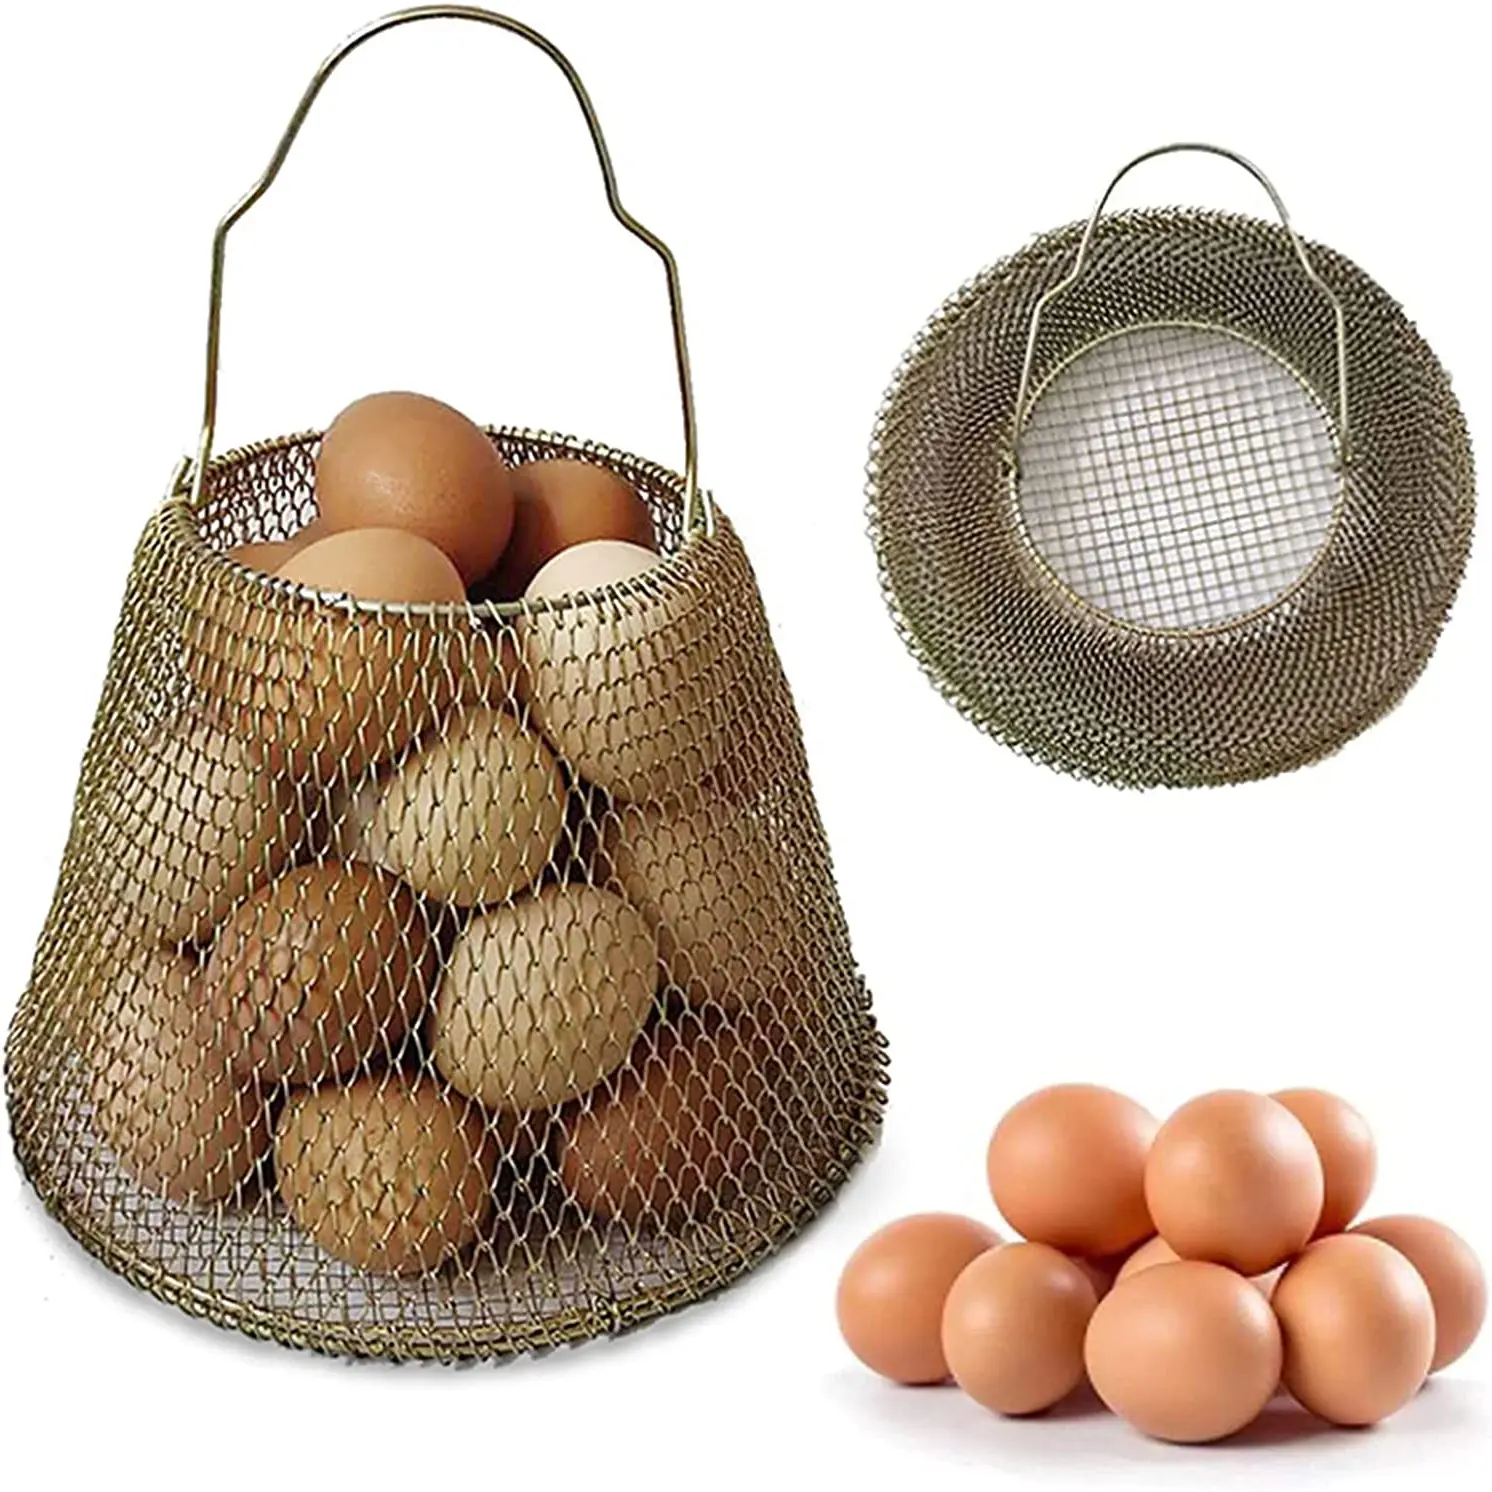 Großhandel Ei Sammel korb Huhn zusammen klappbare Mini Draht frische Eier tragen Körbe